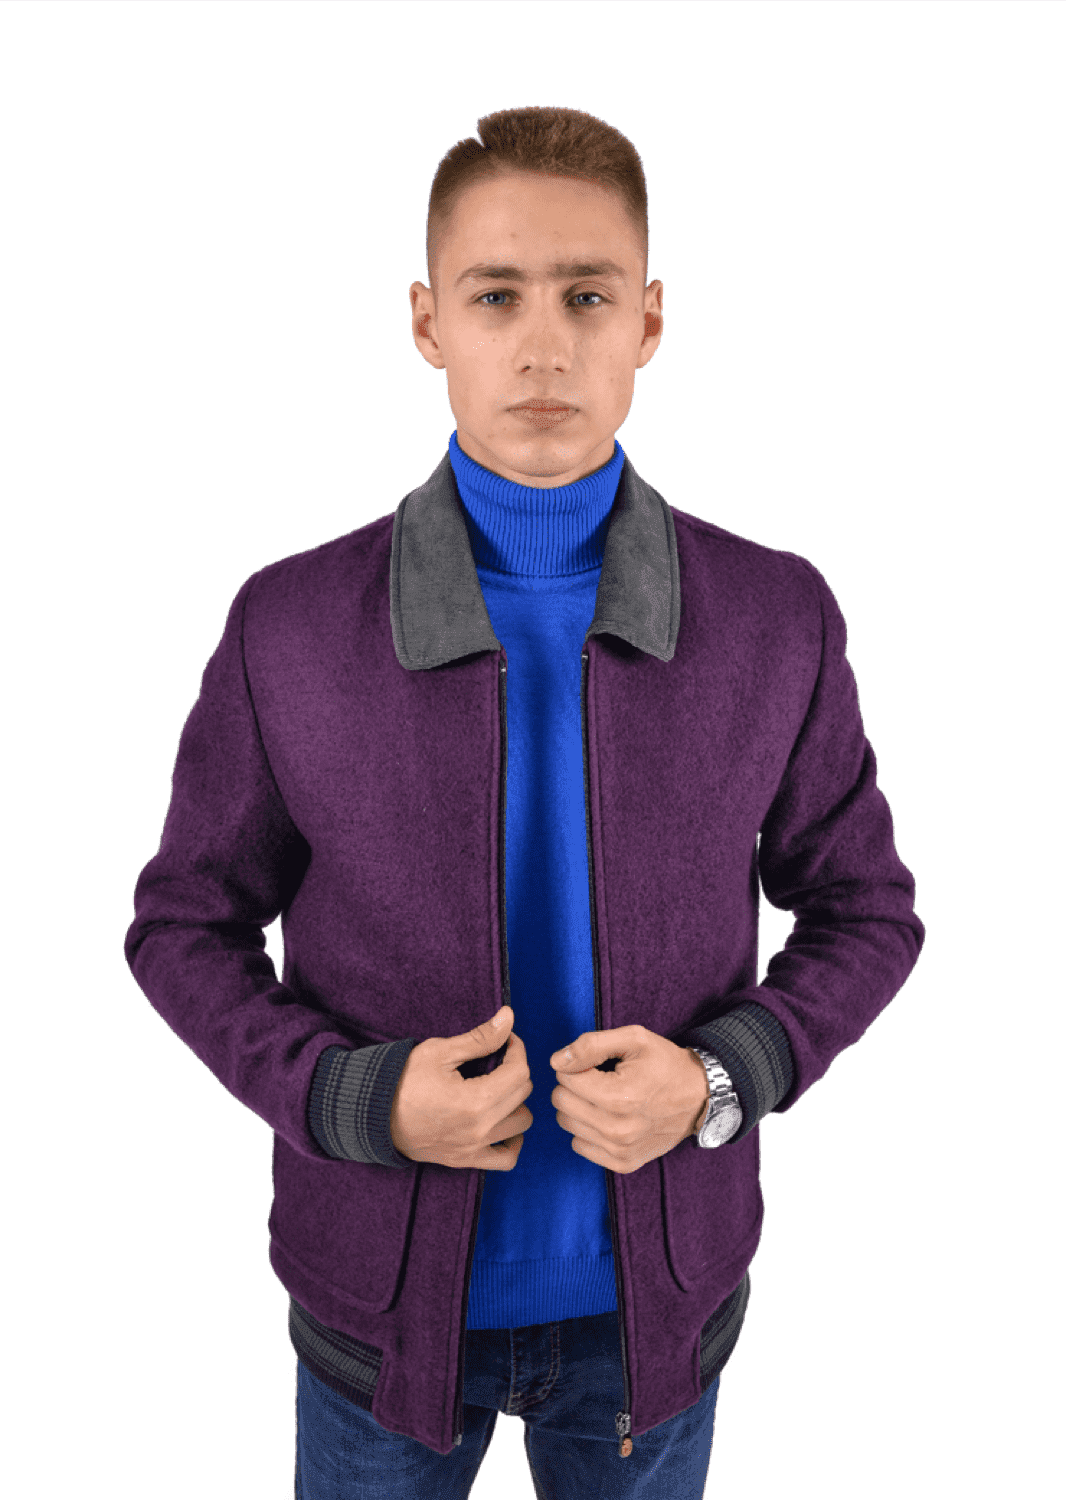 Куртка пилот с отложенным воротником фиолетовая (50) PIZHON 3820-04, размер 50, цвет фиолетовый - фото 1